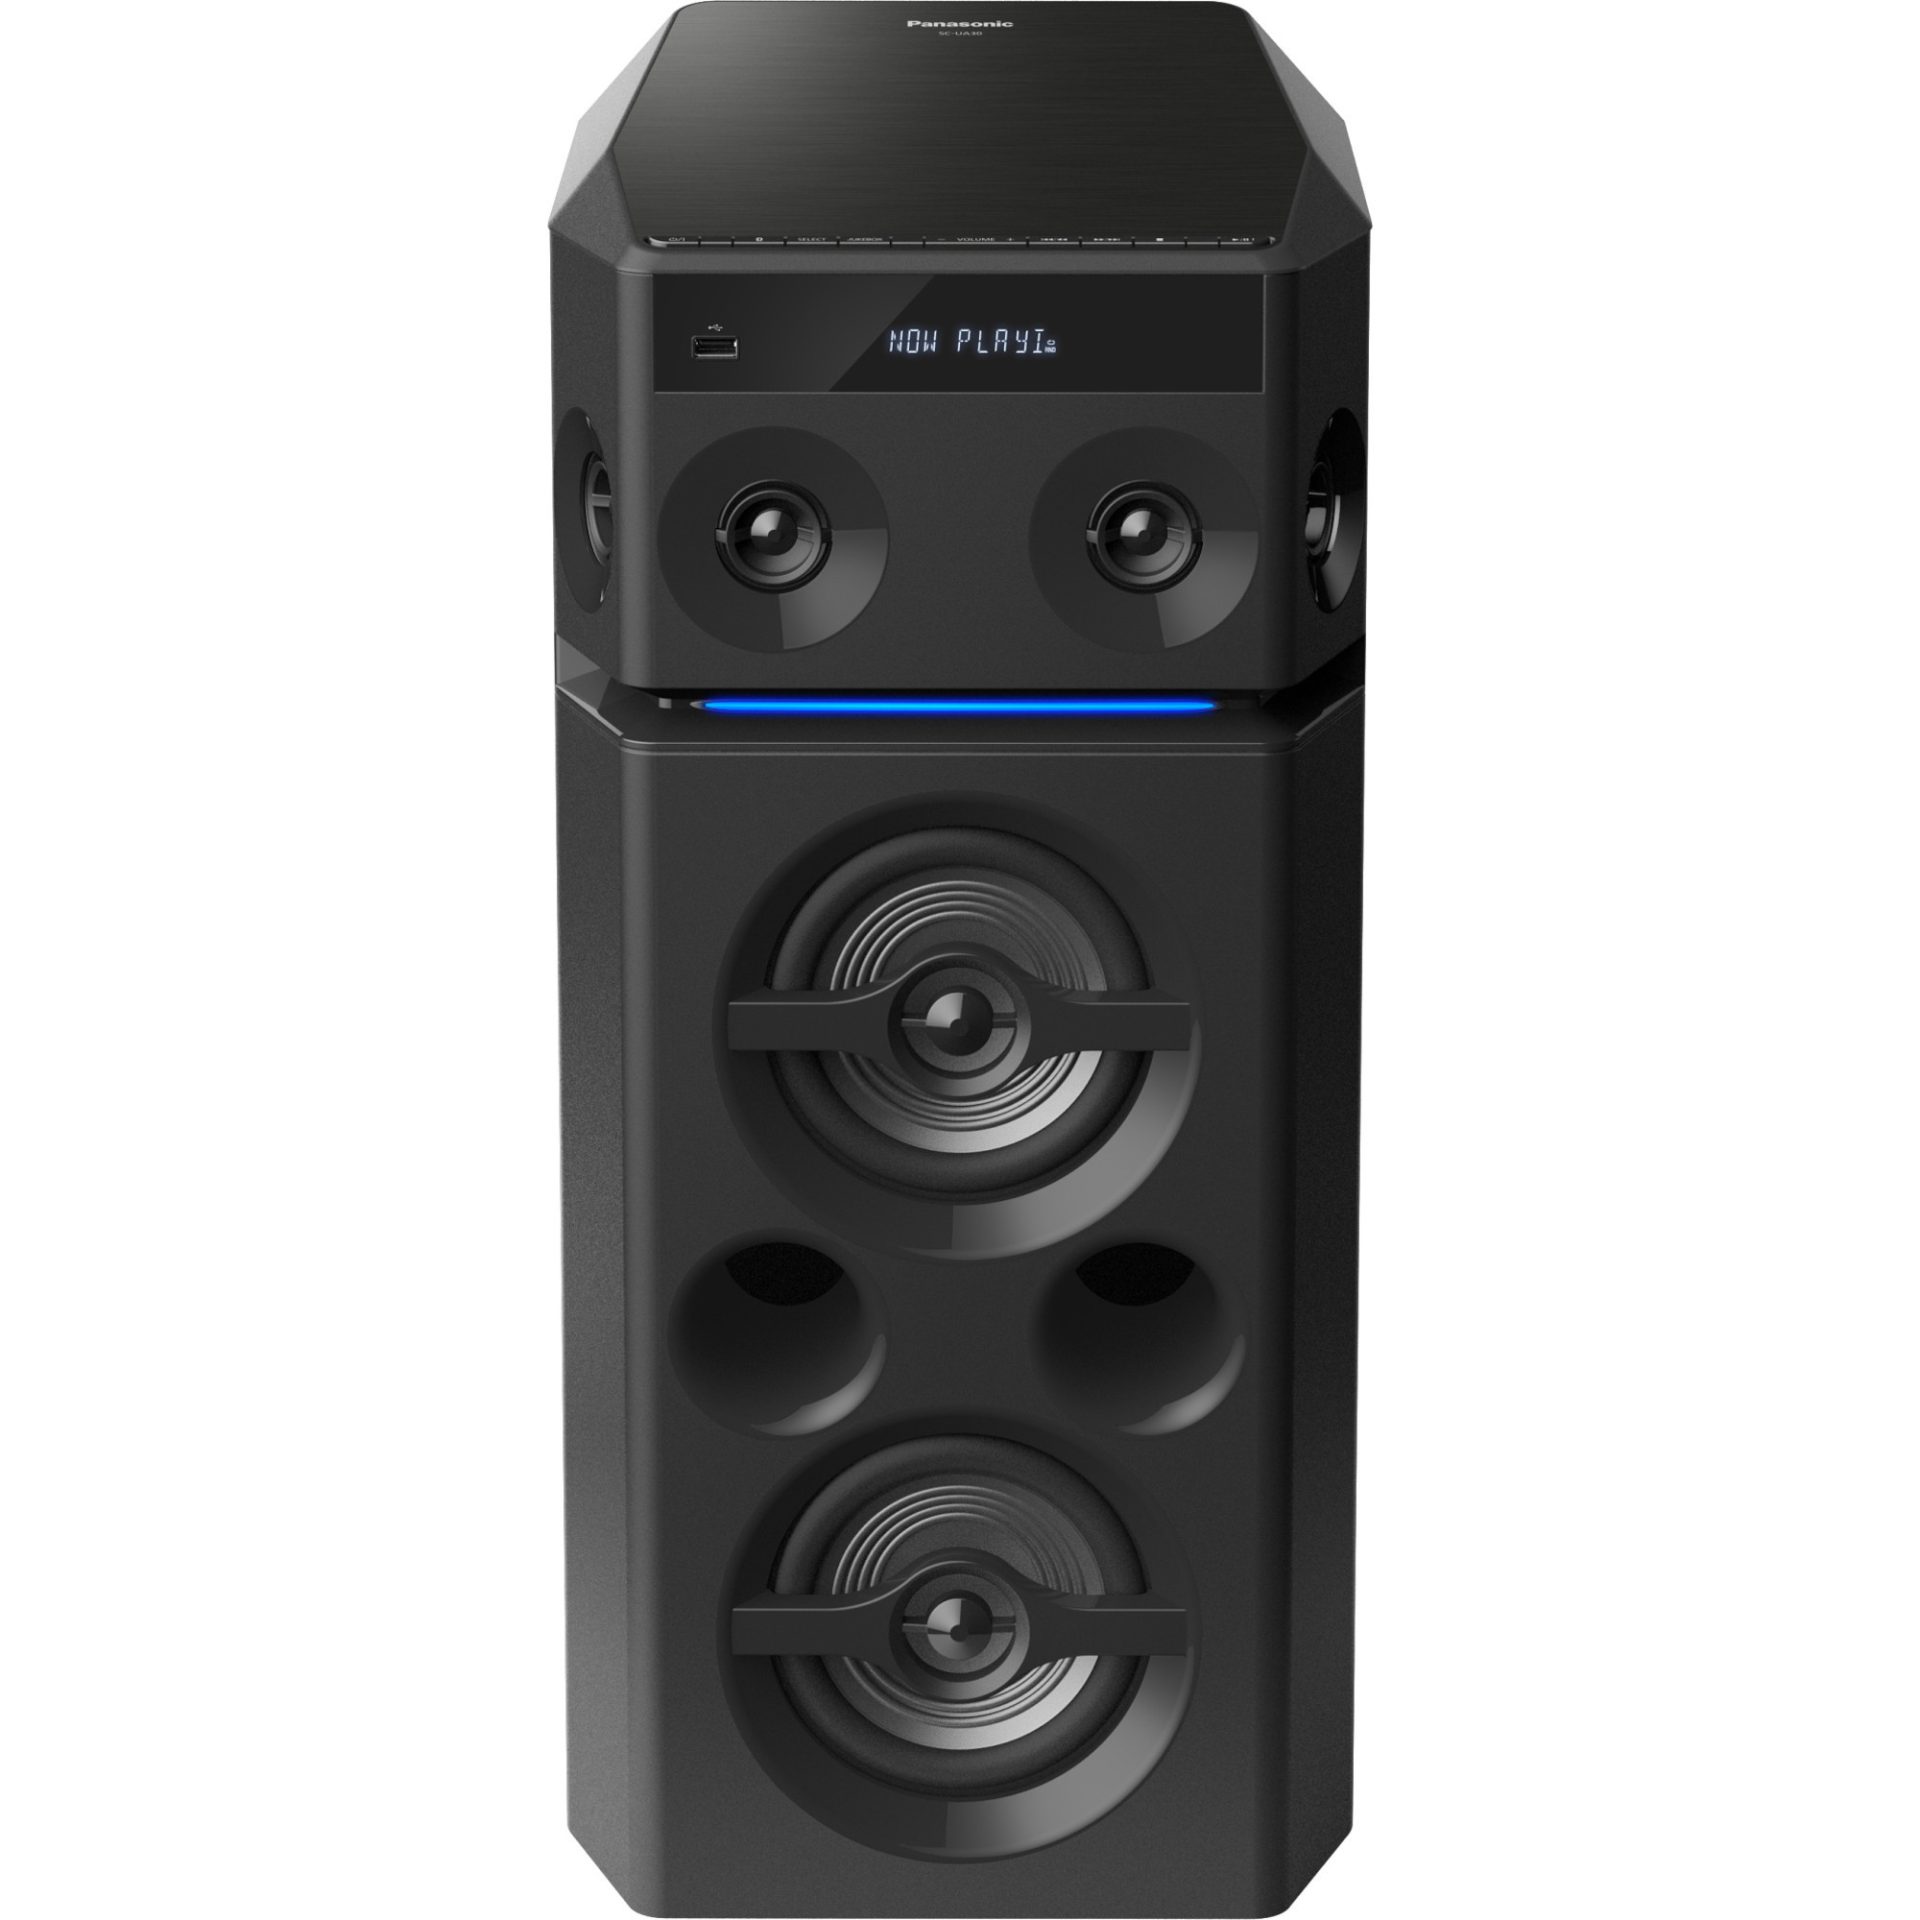 Zdjęcia - System audio Panasonic SC-UA30 głośnik bezprzewodowy (3300W, Bluetooth, USB, FM, 4 głoś 